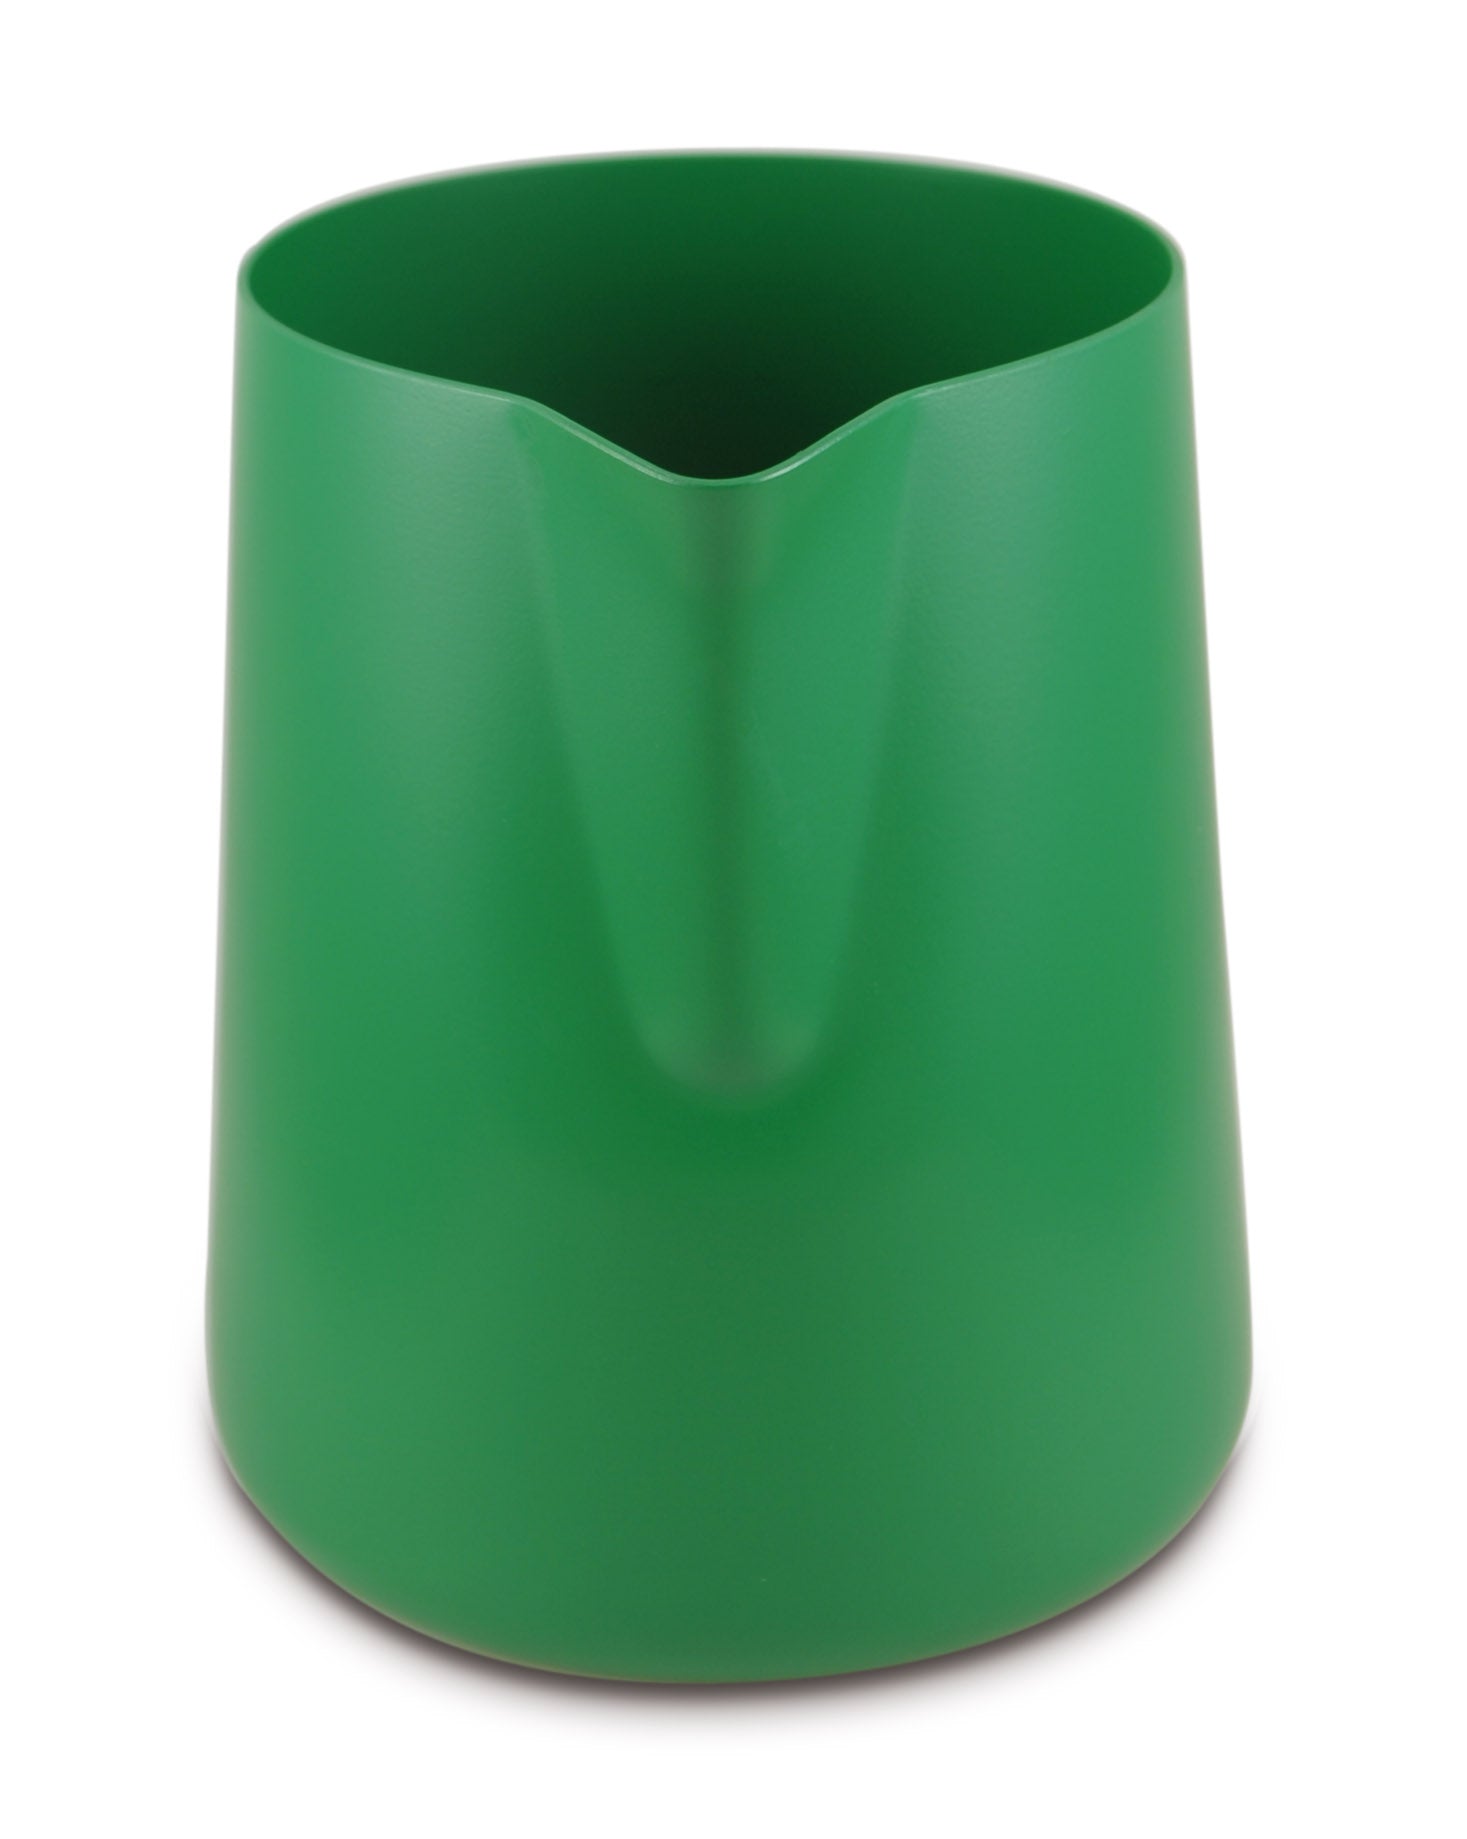 Lattiera per cappuccino in acciaio inox | Colore verde | Capacità 950 ml